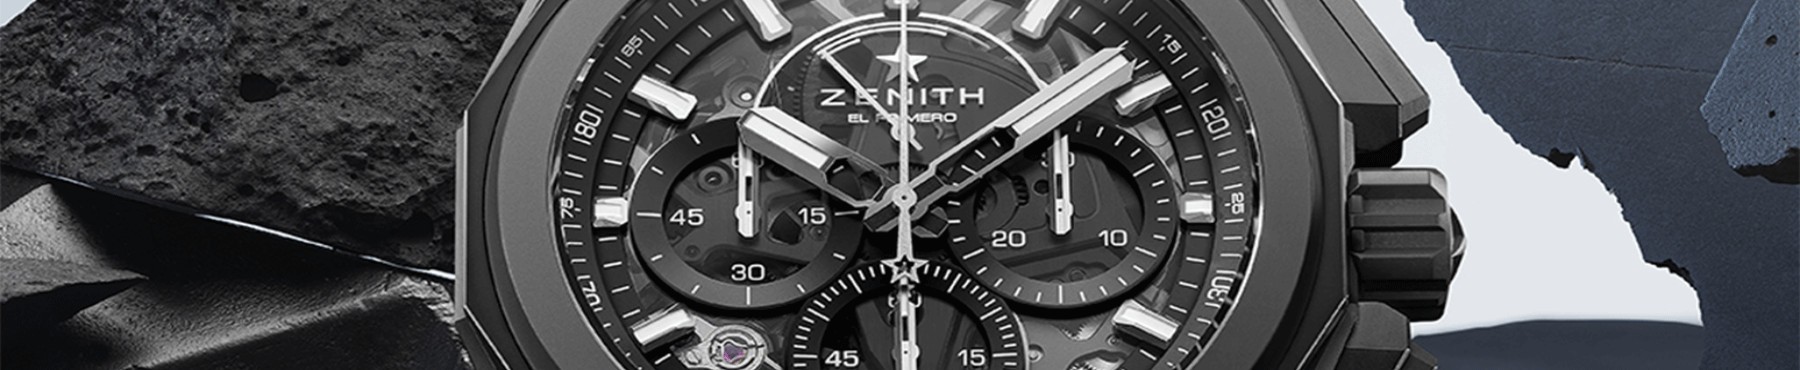 Zenith Defy Extreme Watches